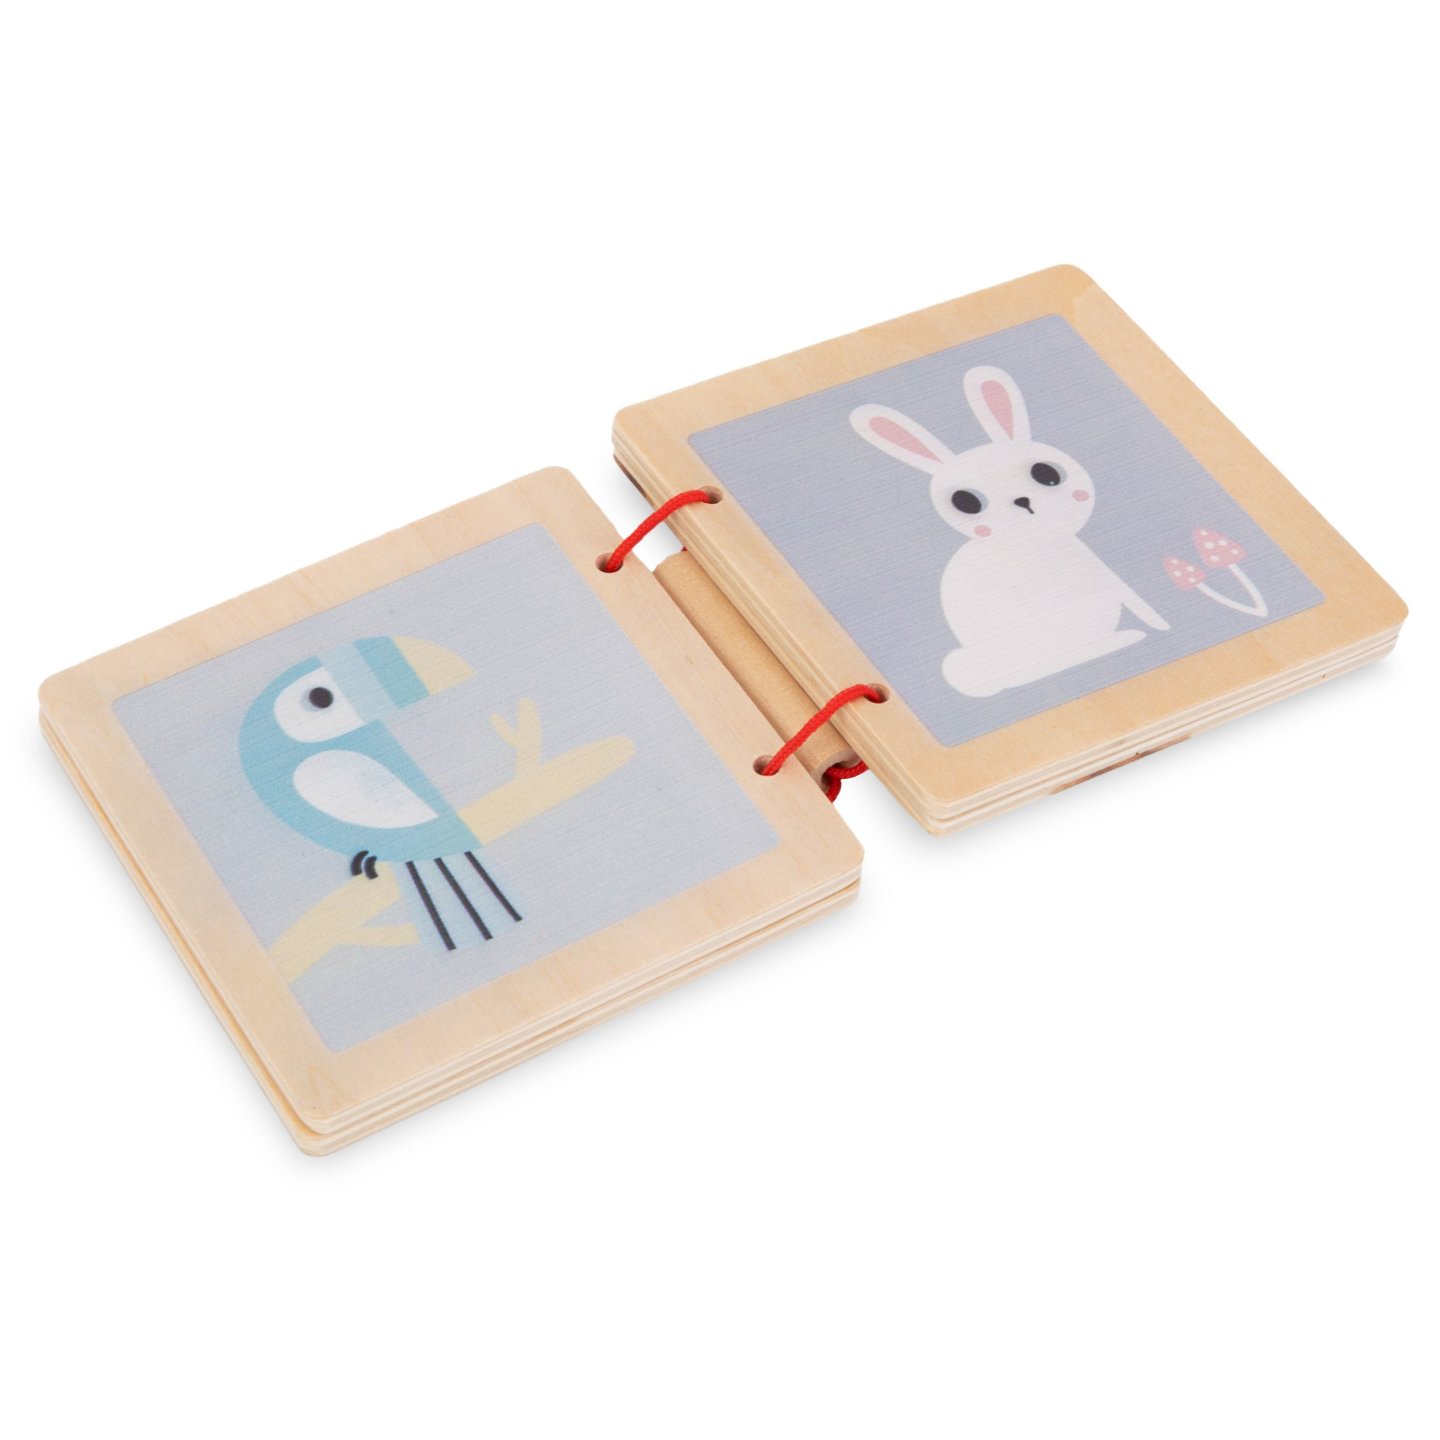 Pudełko edukacyjne Montessori dla niemowląt - 6 zabawek